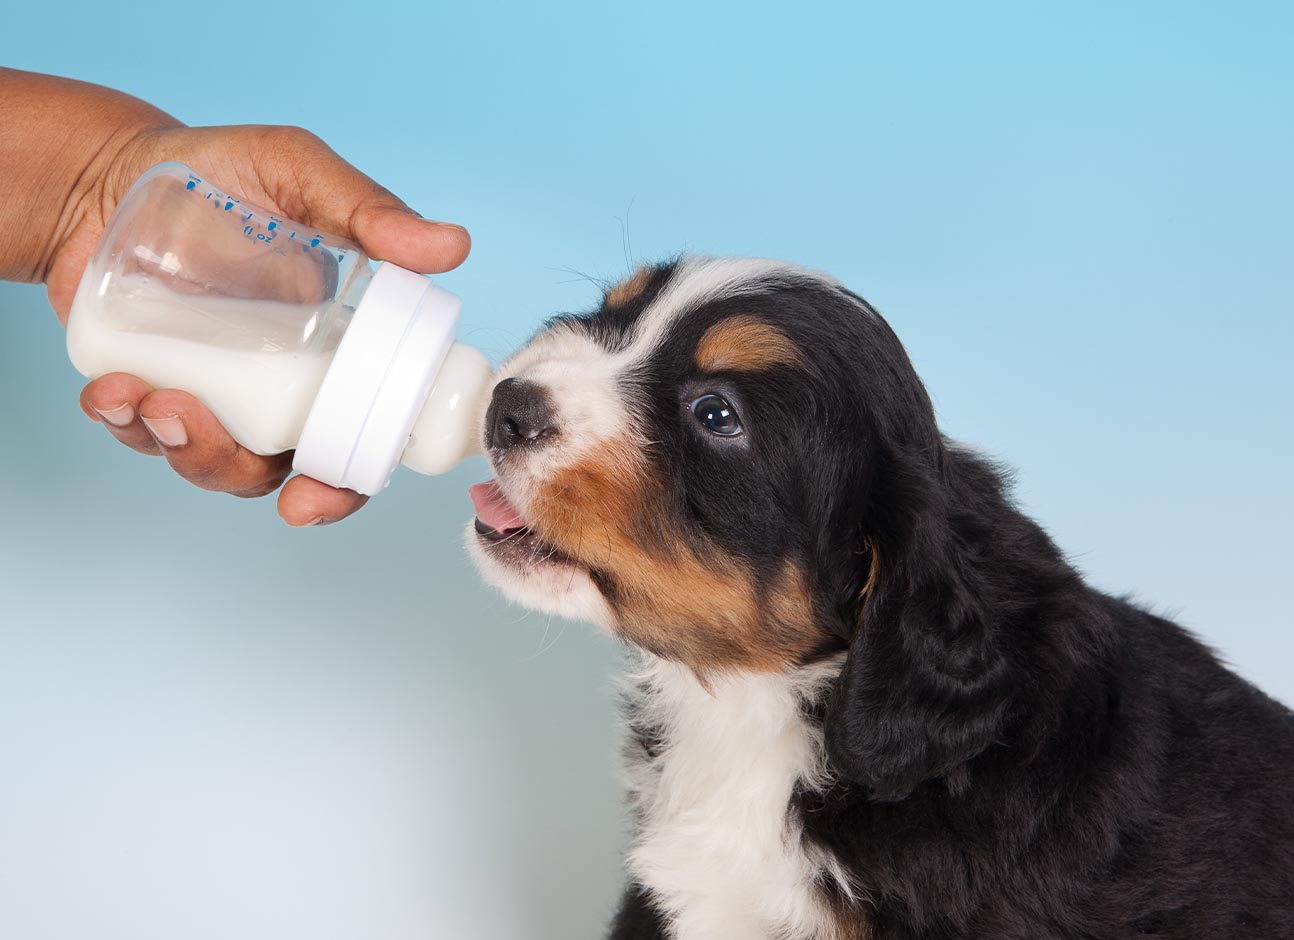 Feeding dog with milk